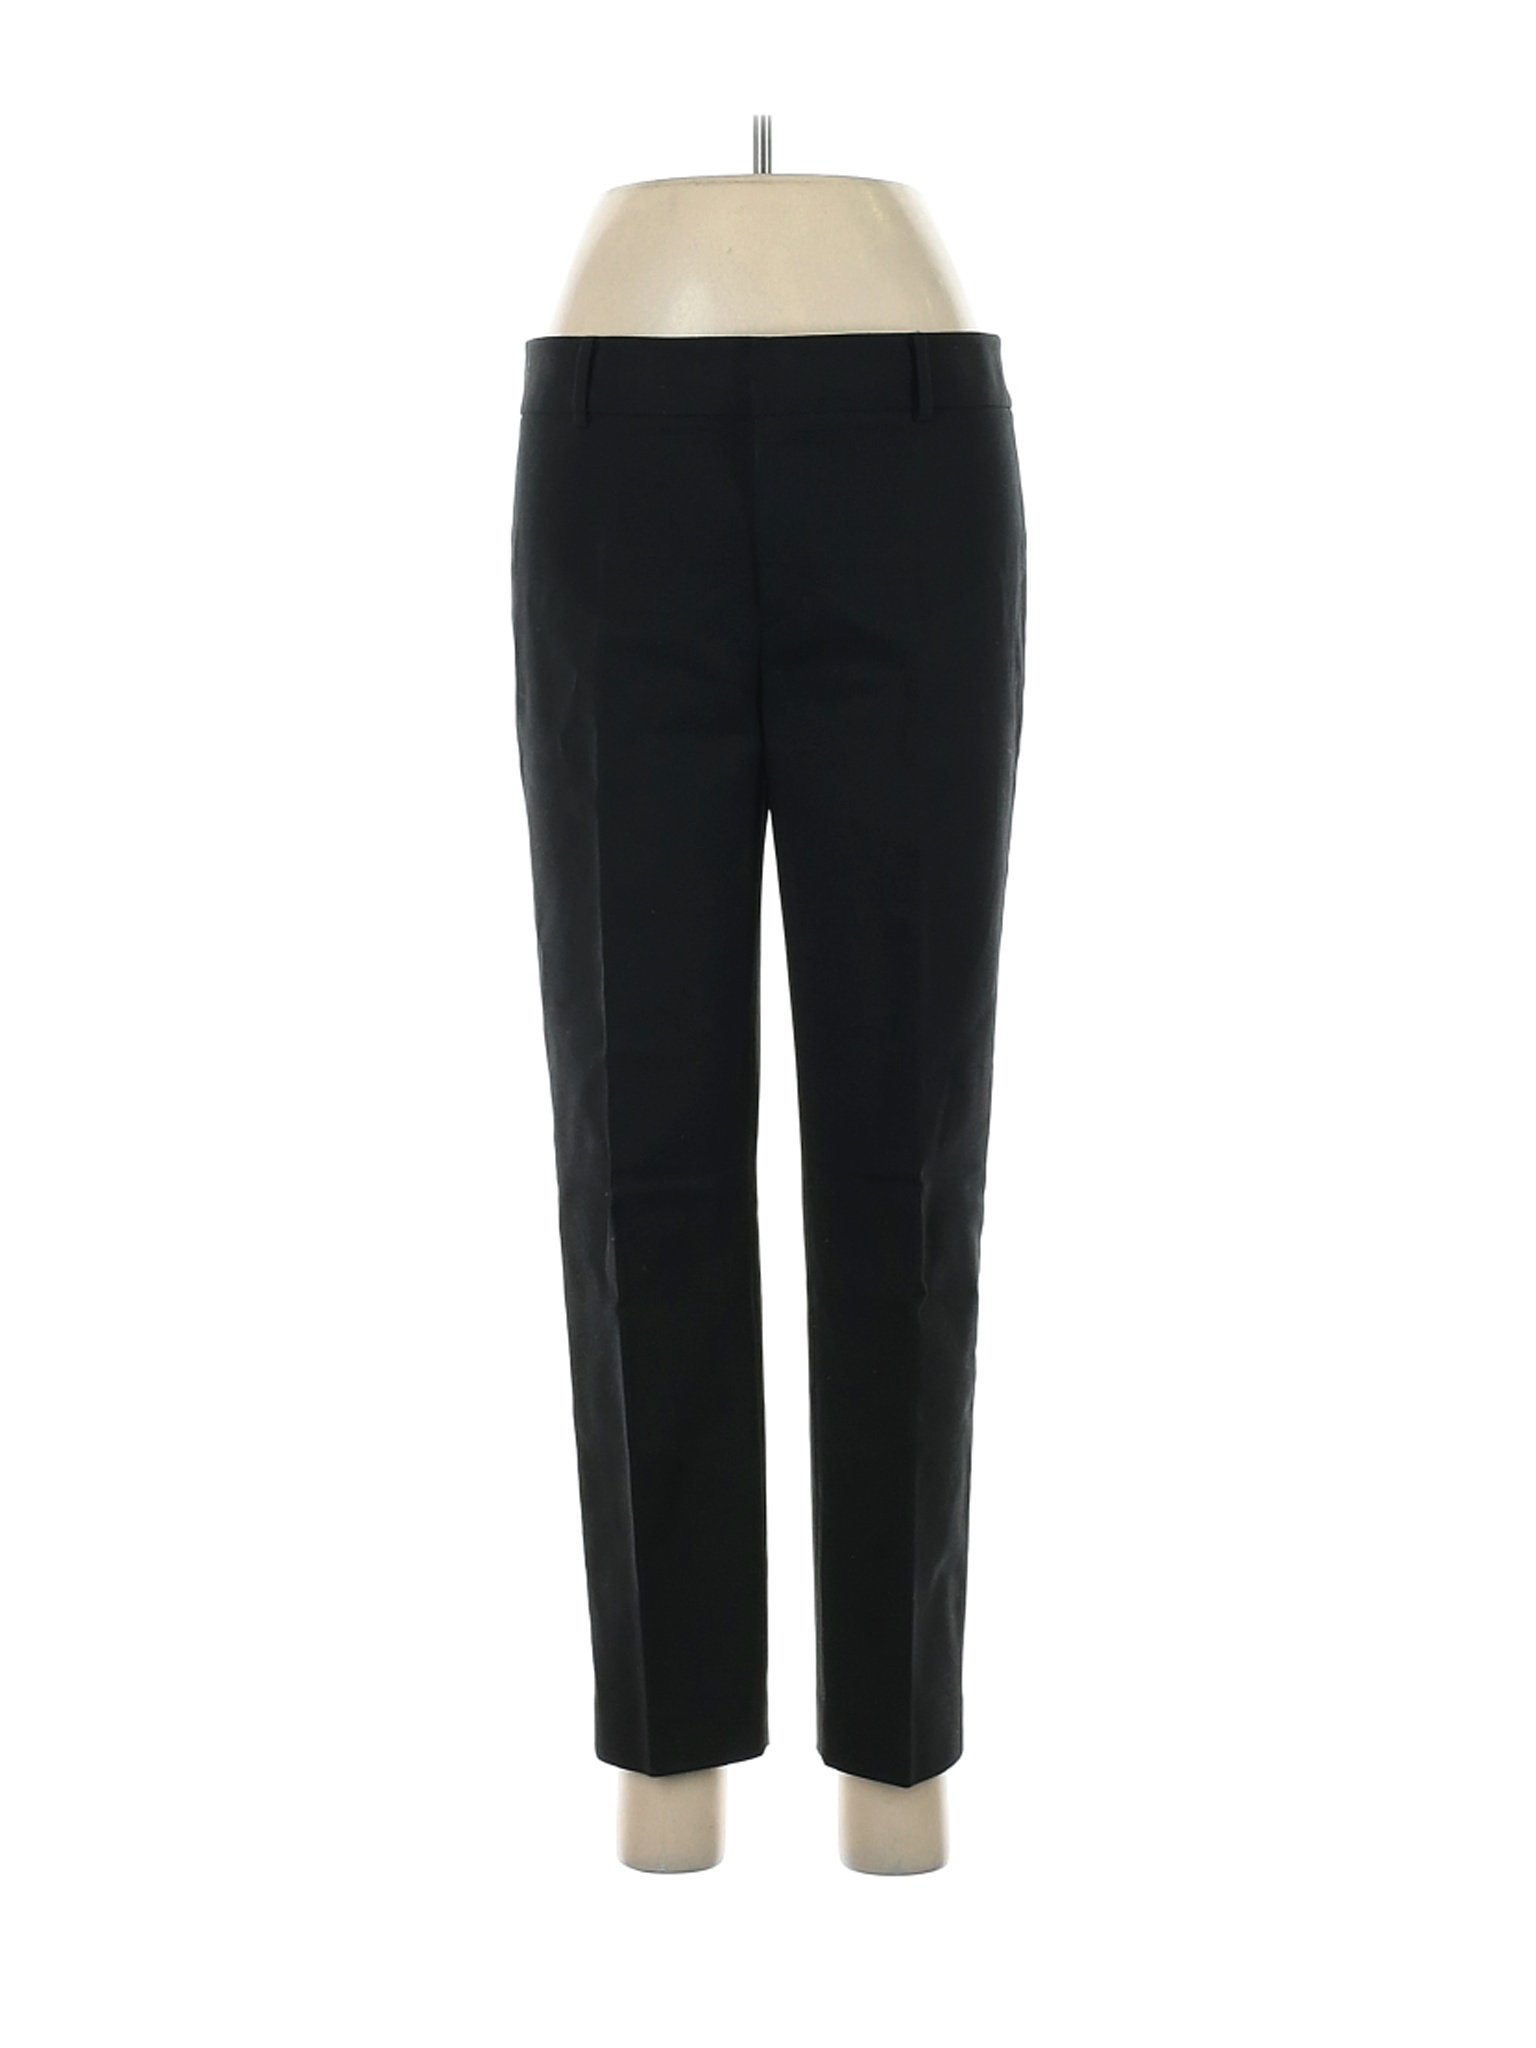 Club Monaco Women Black Dress Pants 8 | eBay